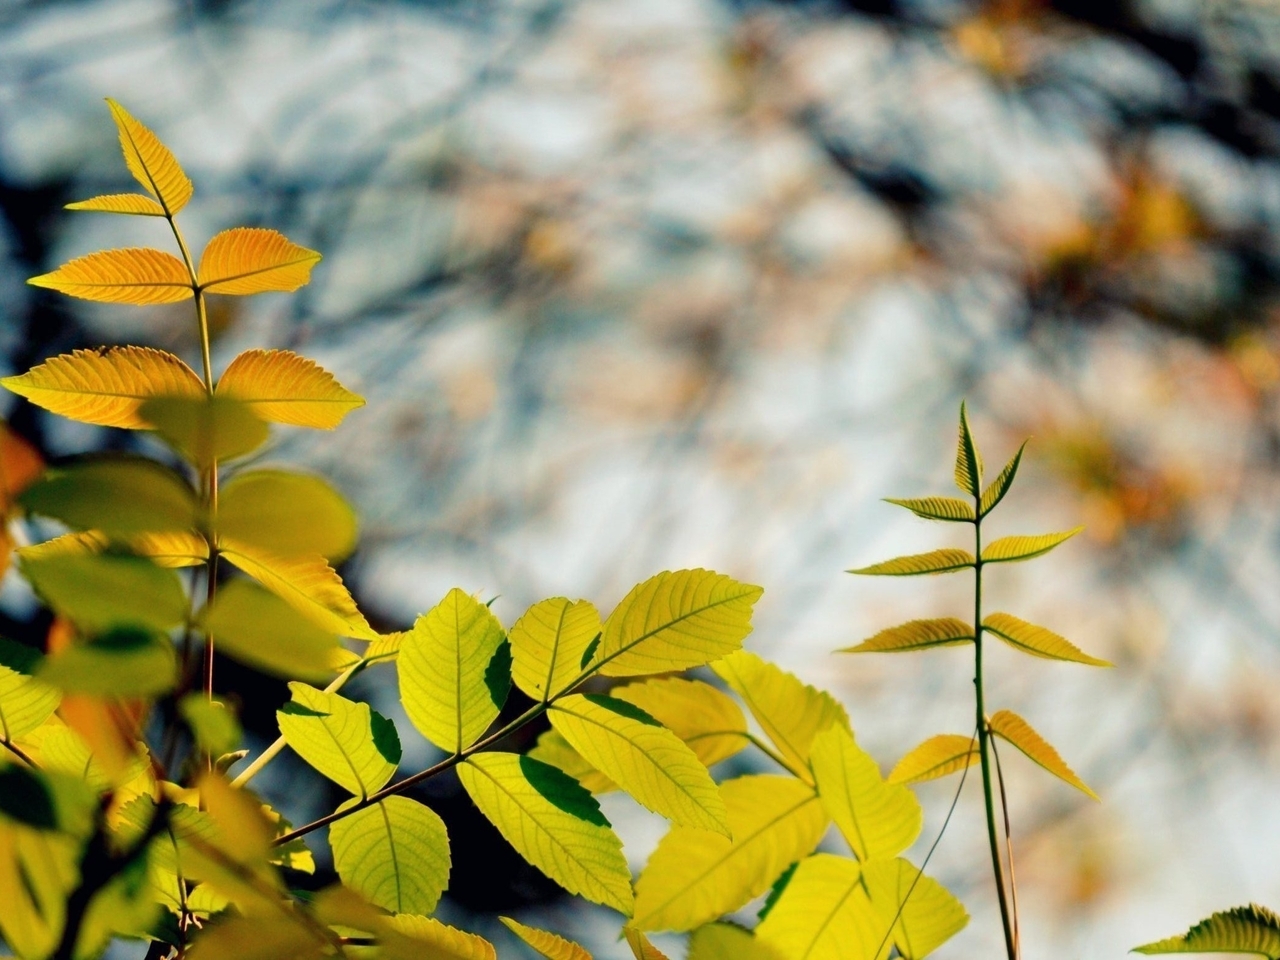 Картинка: Листья, ветки, размытый фон